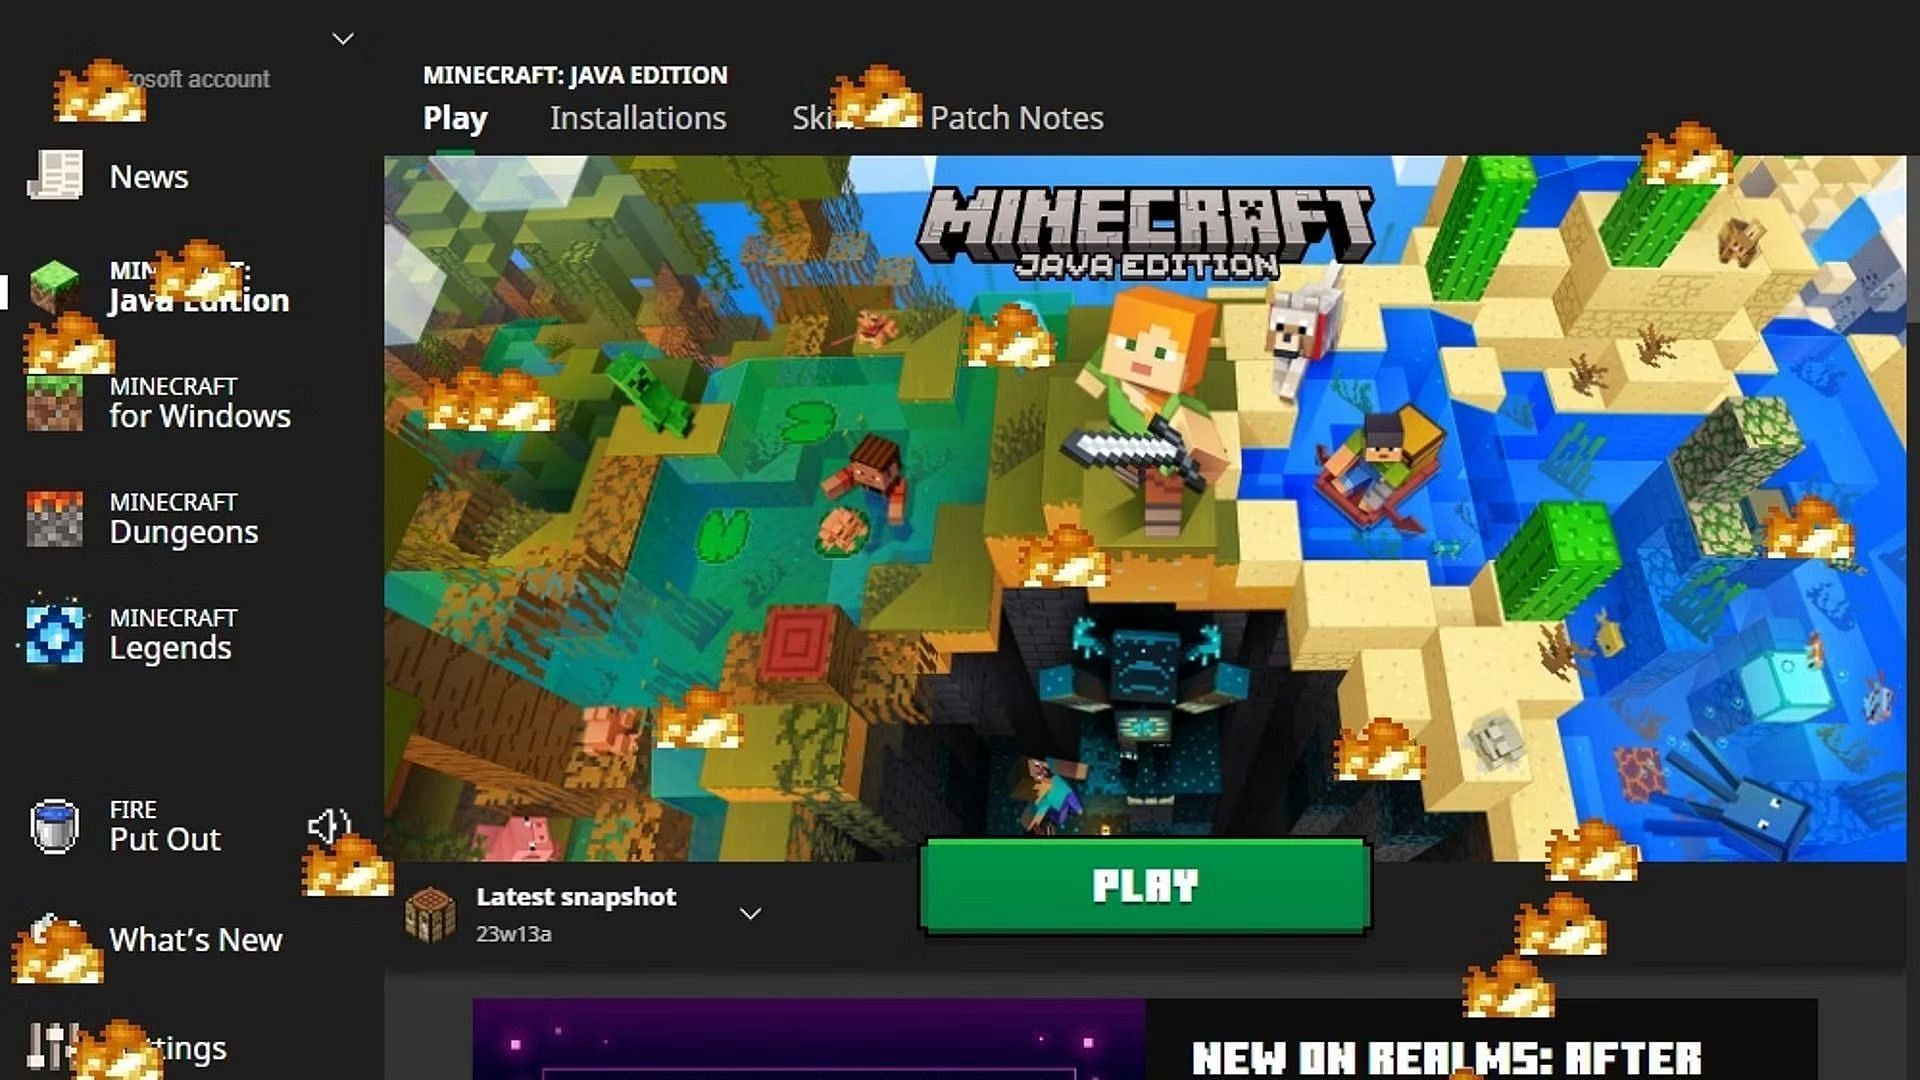 The vote update in Minecraft